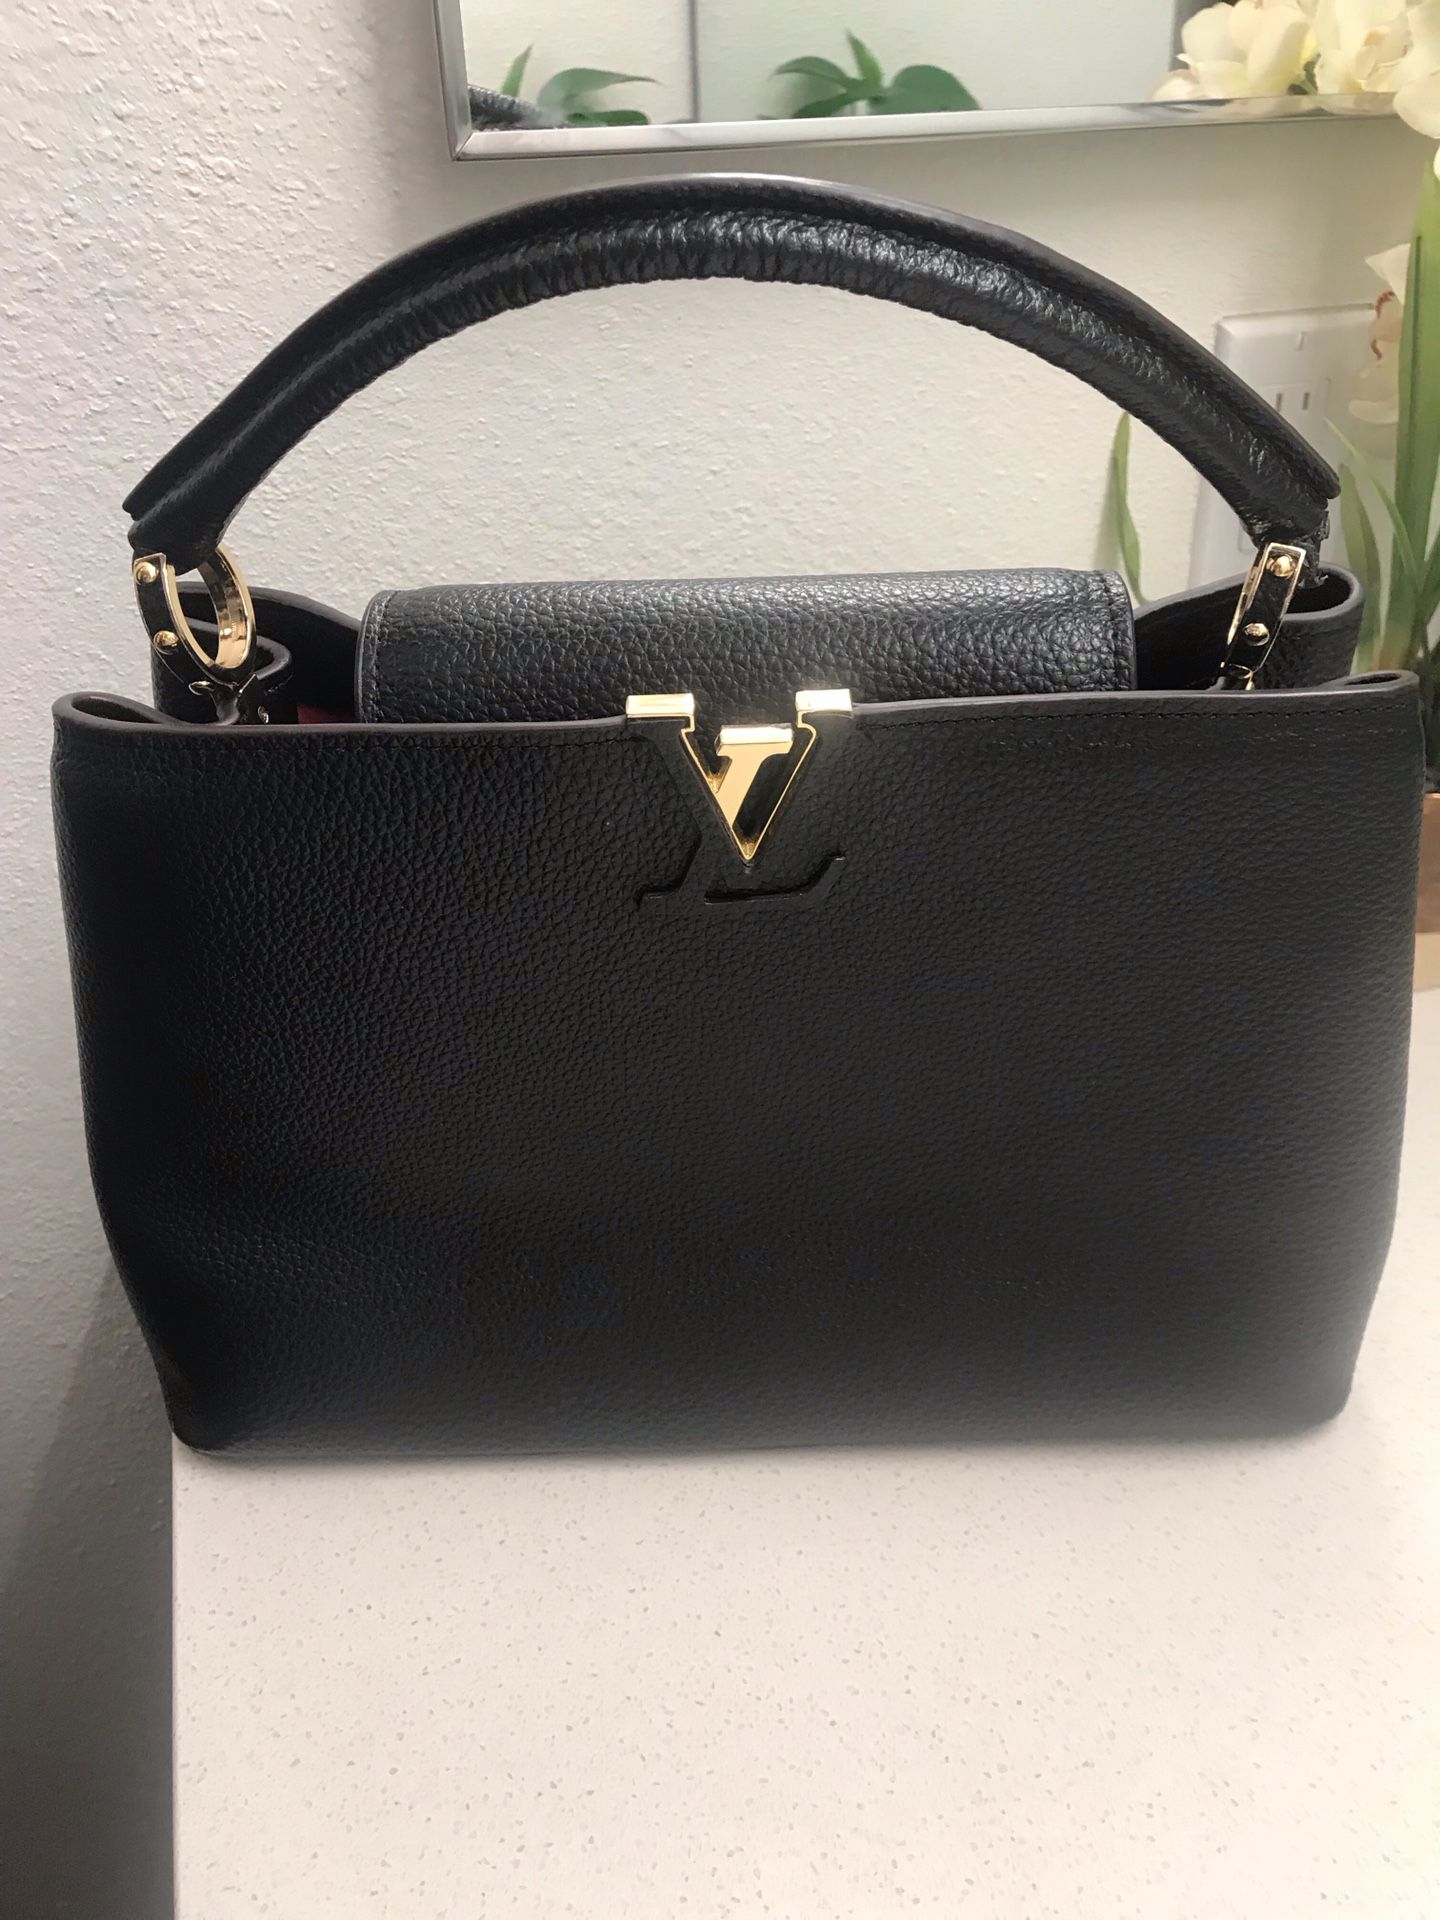 Loui Vuitton hand bag offer now